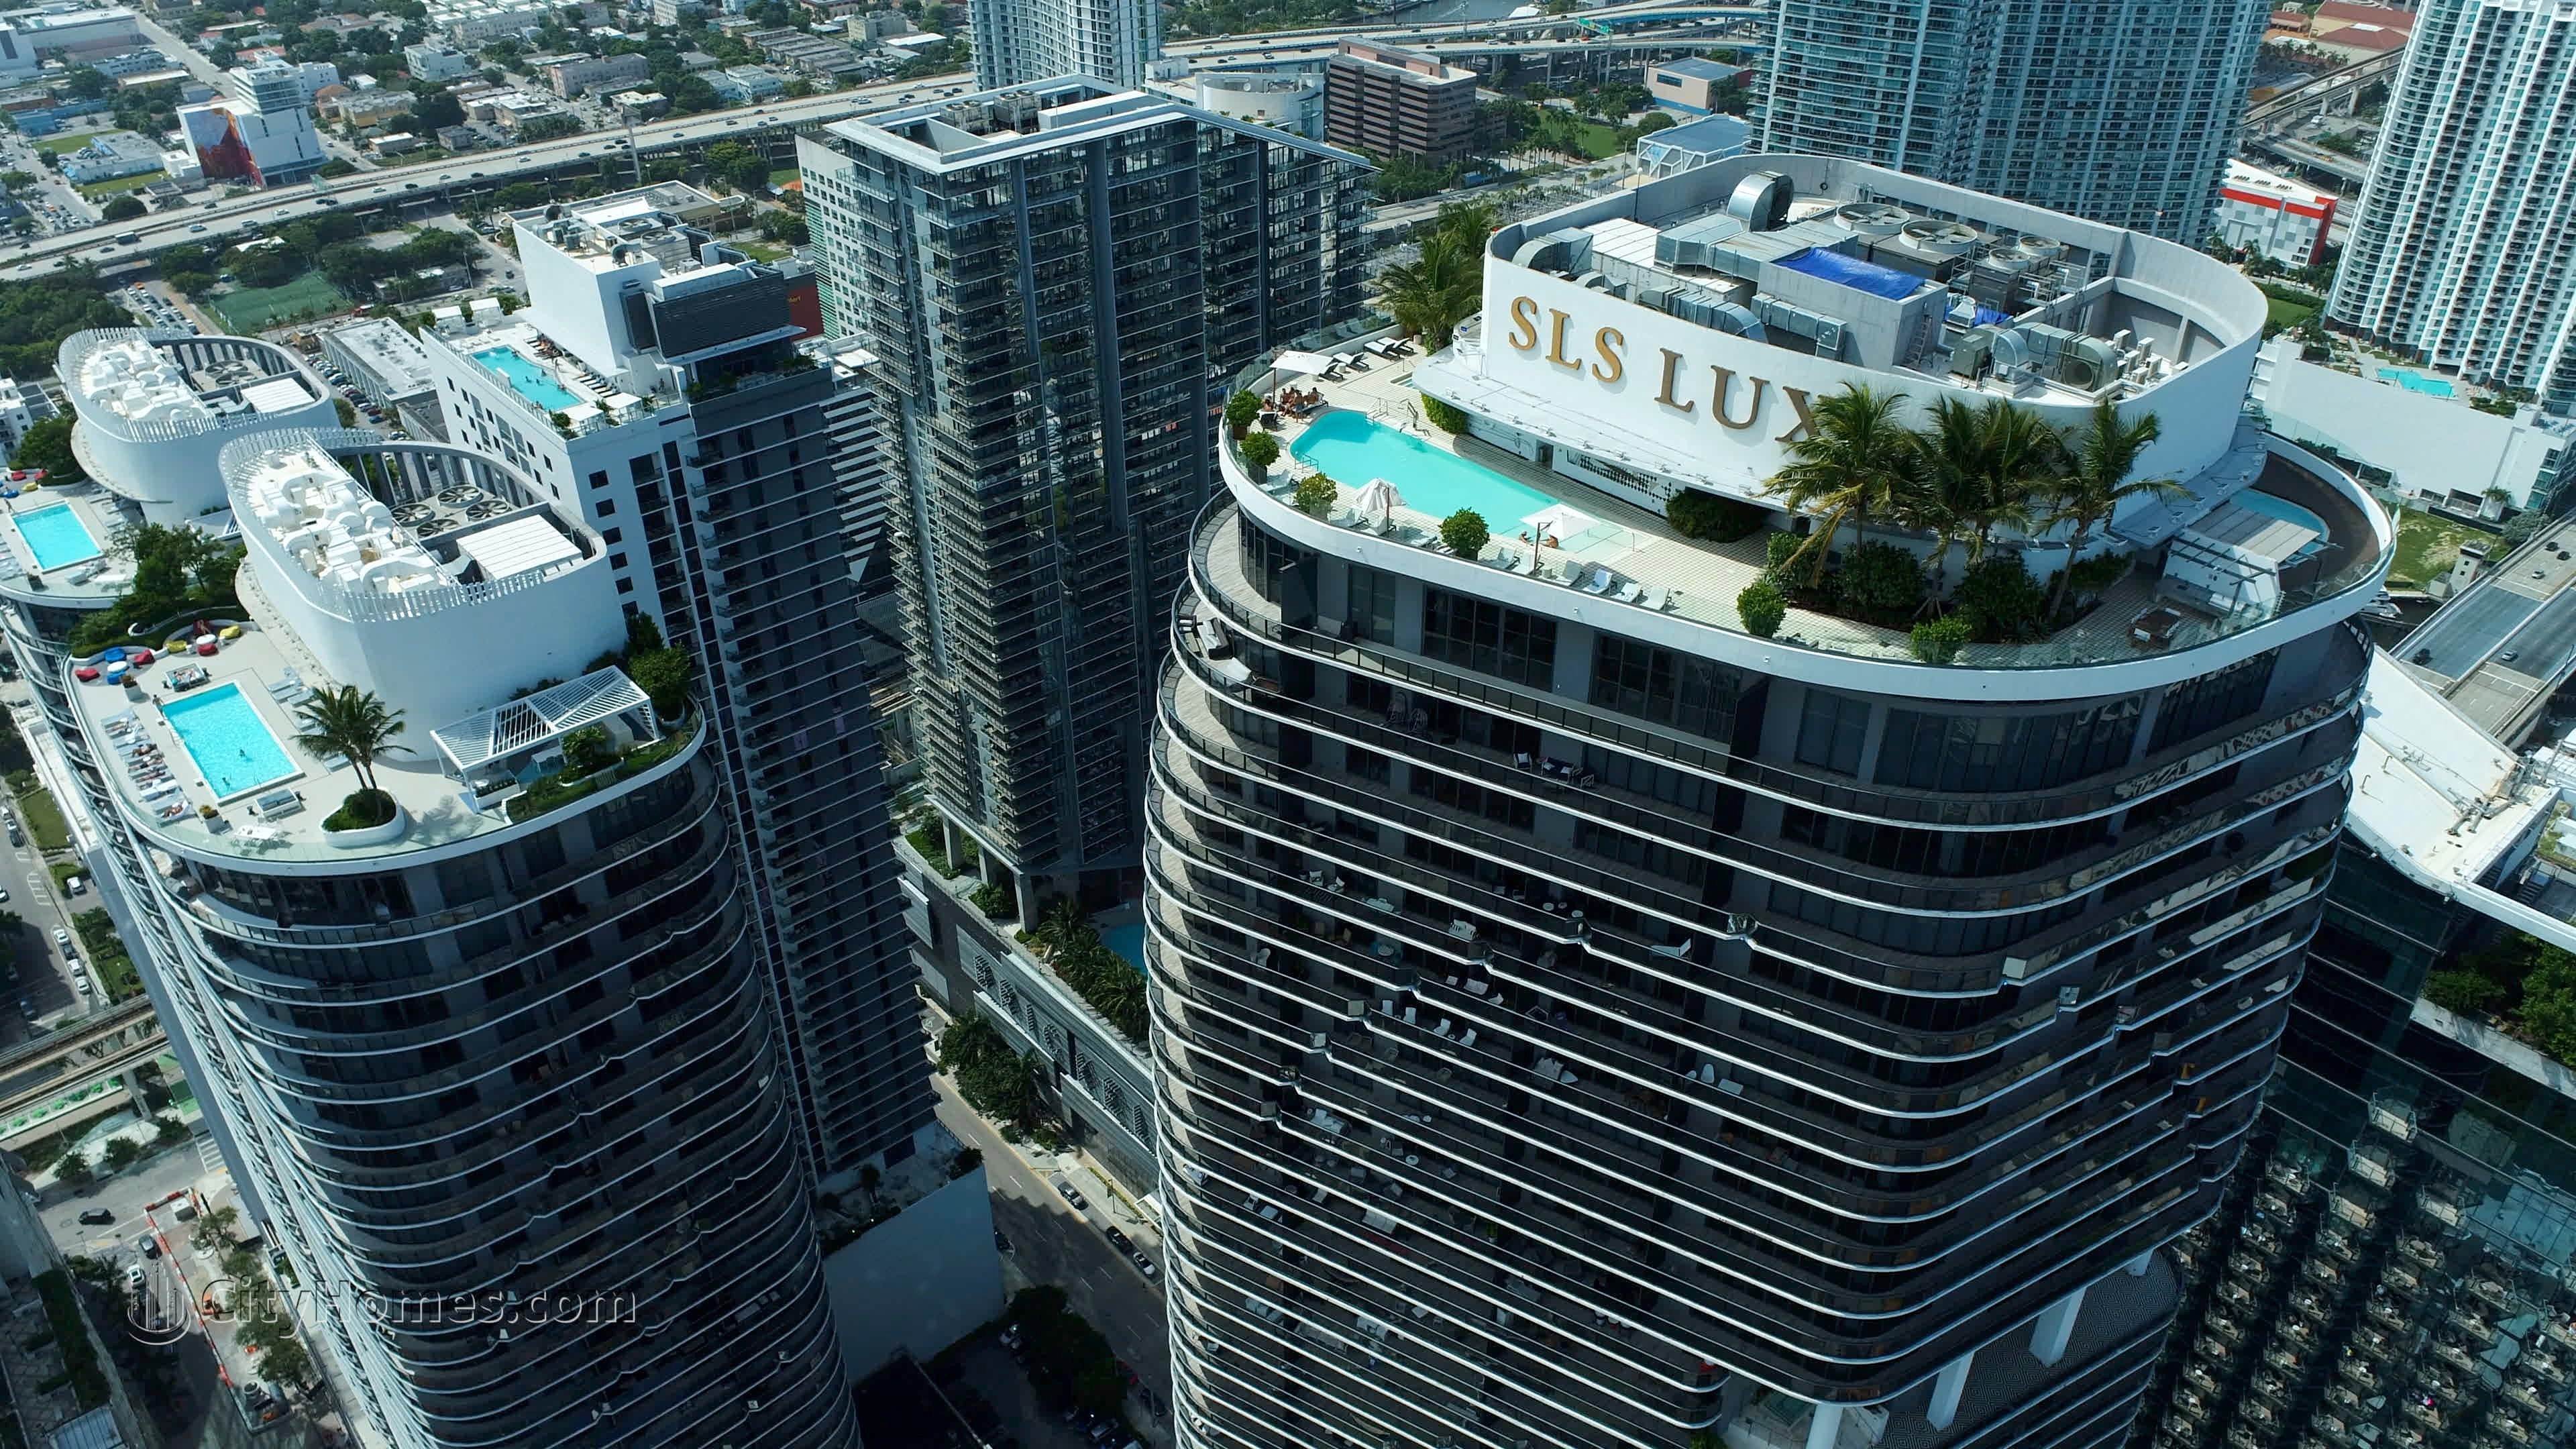 3. SLS Lux xây dựng tại 801 S Miami Avenue, Miami, FL 33139